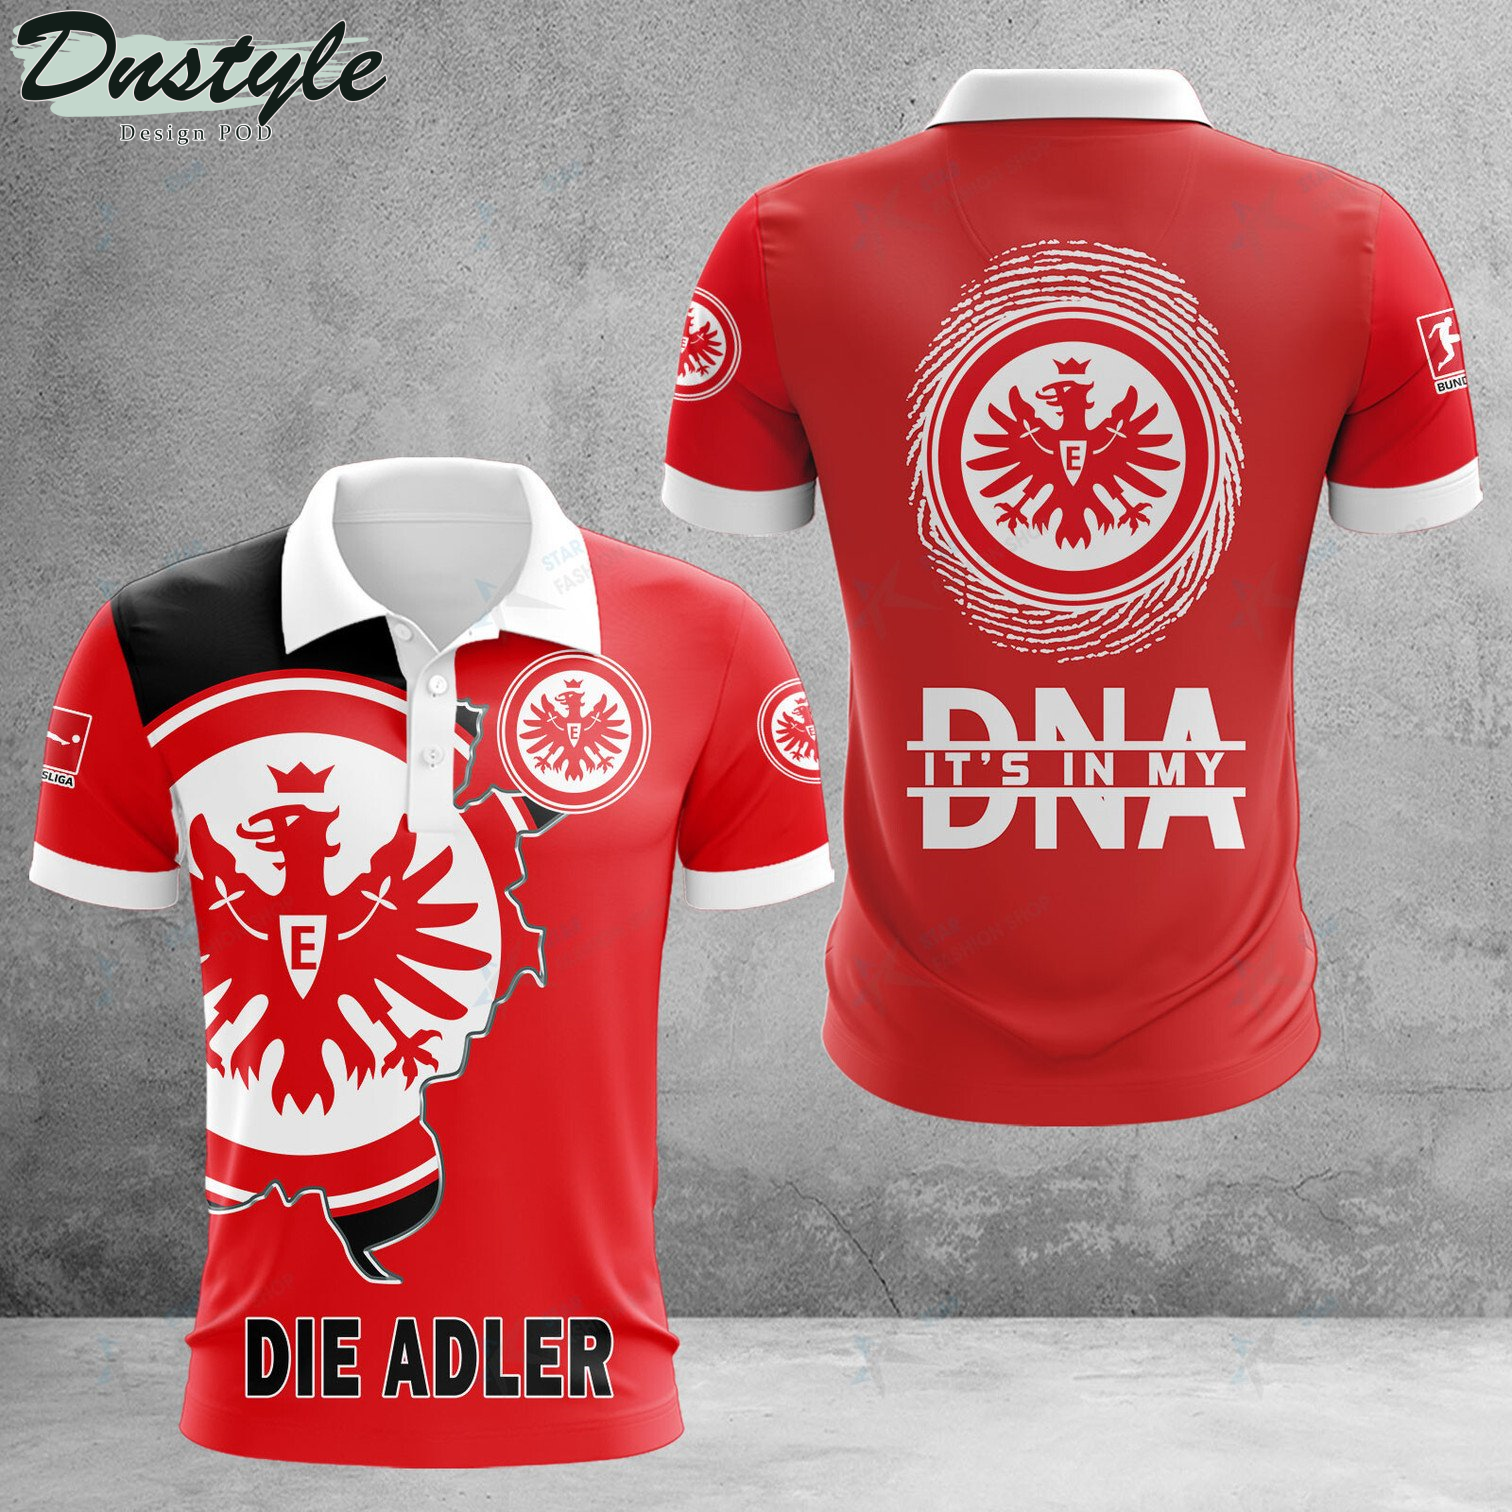 Eintracht Frankfurt it's in my DNA polo shirt